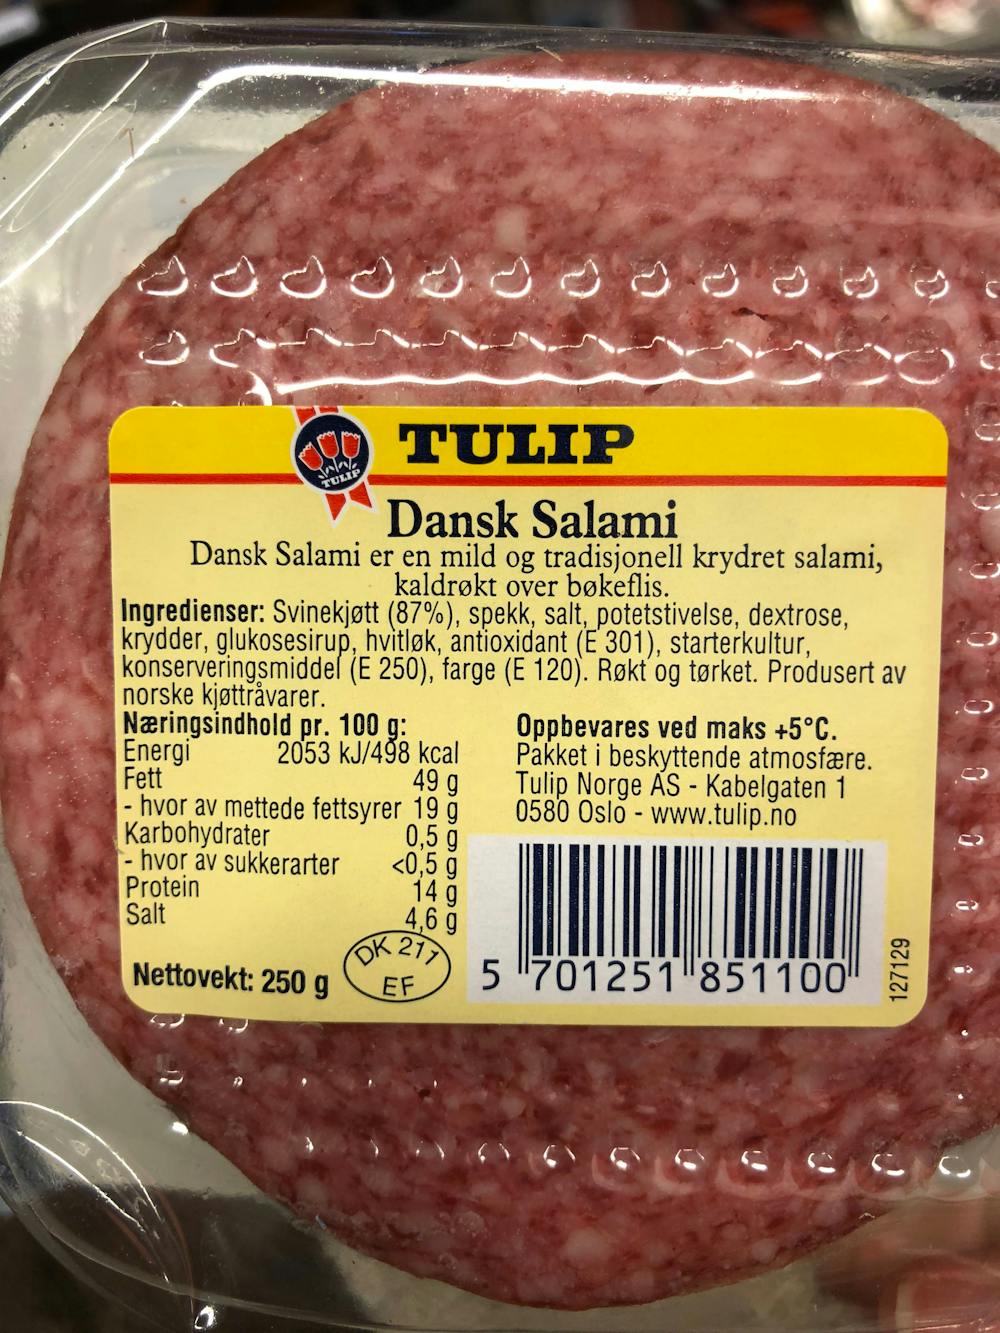 Ingrediensliste - Dansk salami, Tulip